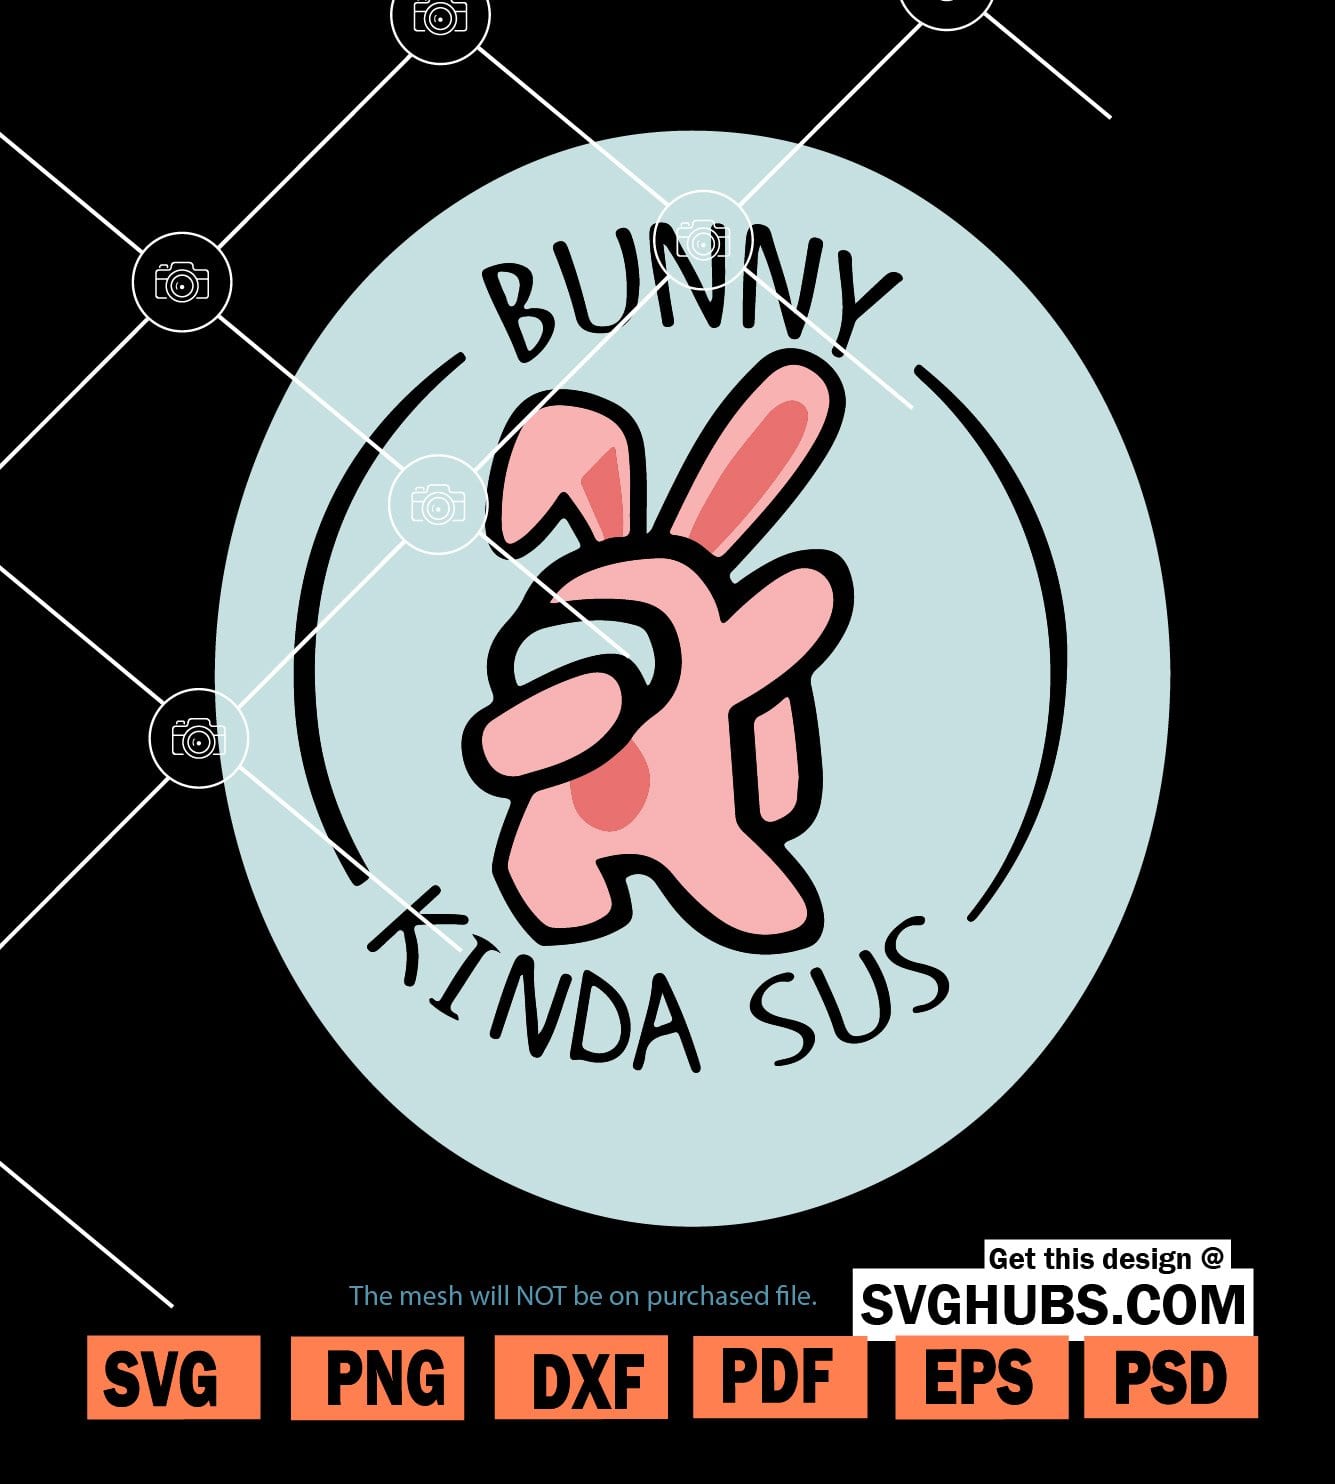 Bunny Among Us SVG